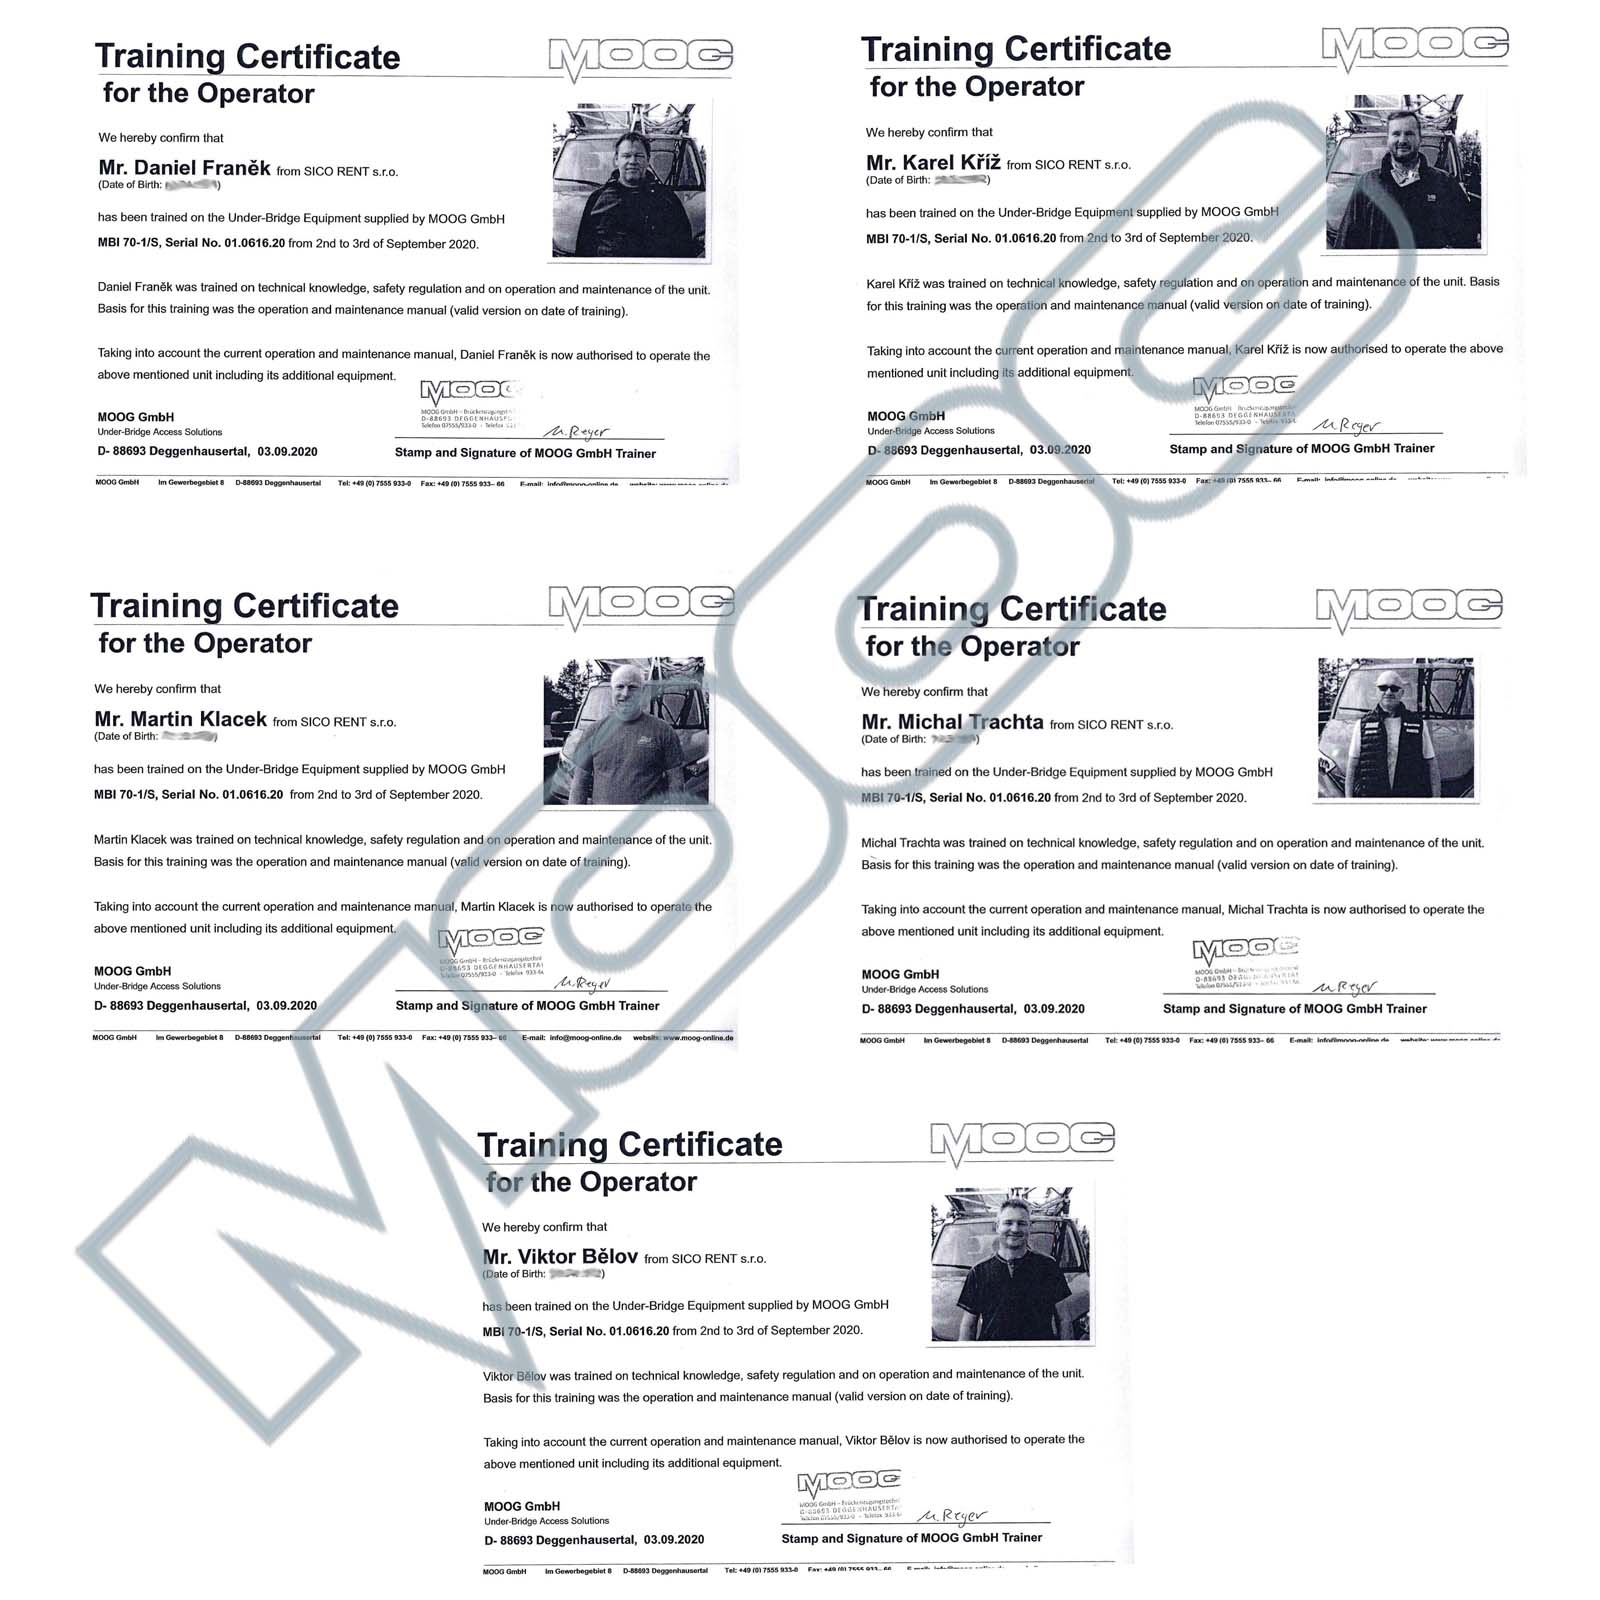 MOOG MBI 70-1/S - certifikace k obsluze